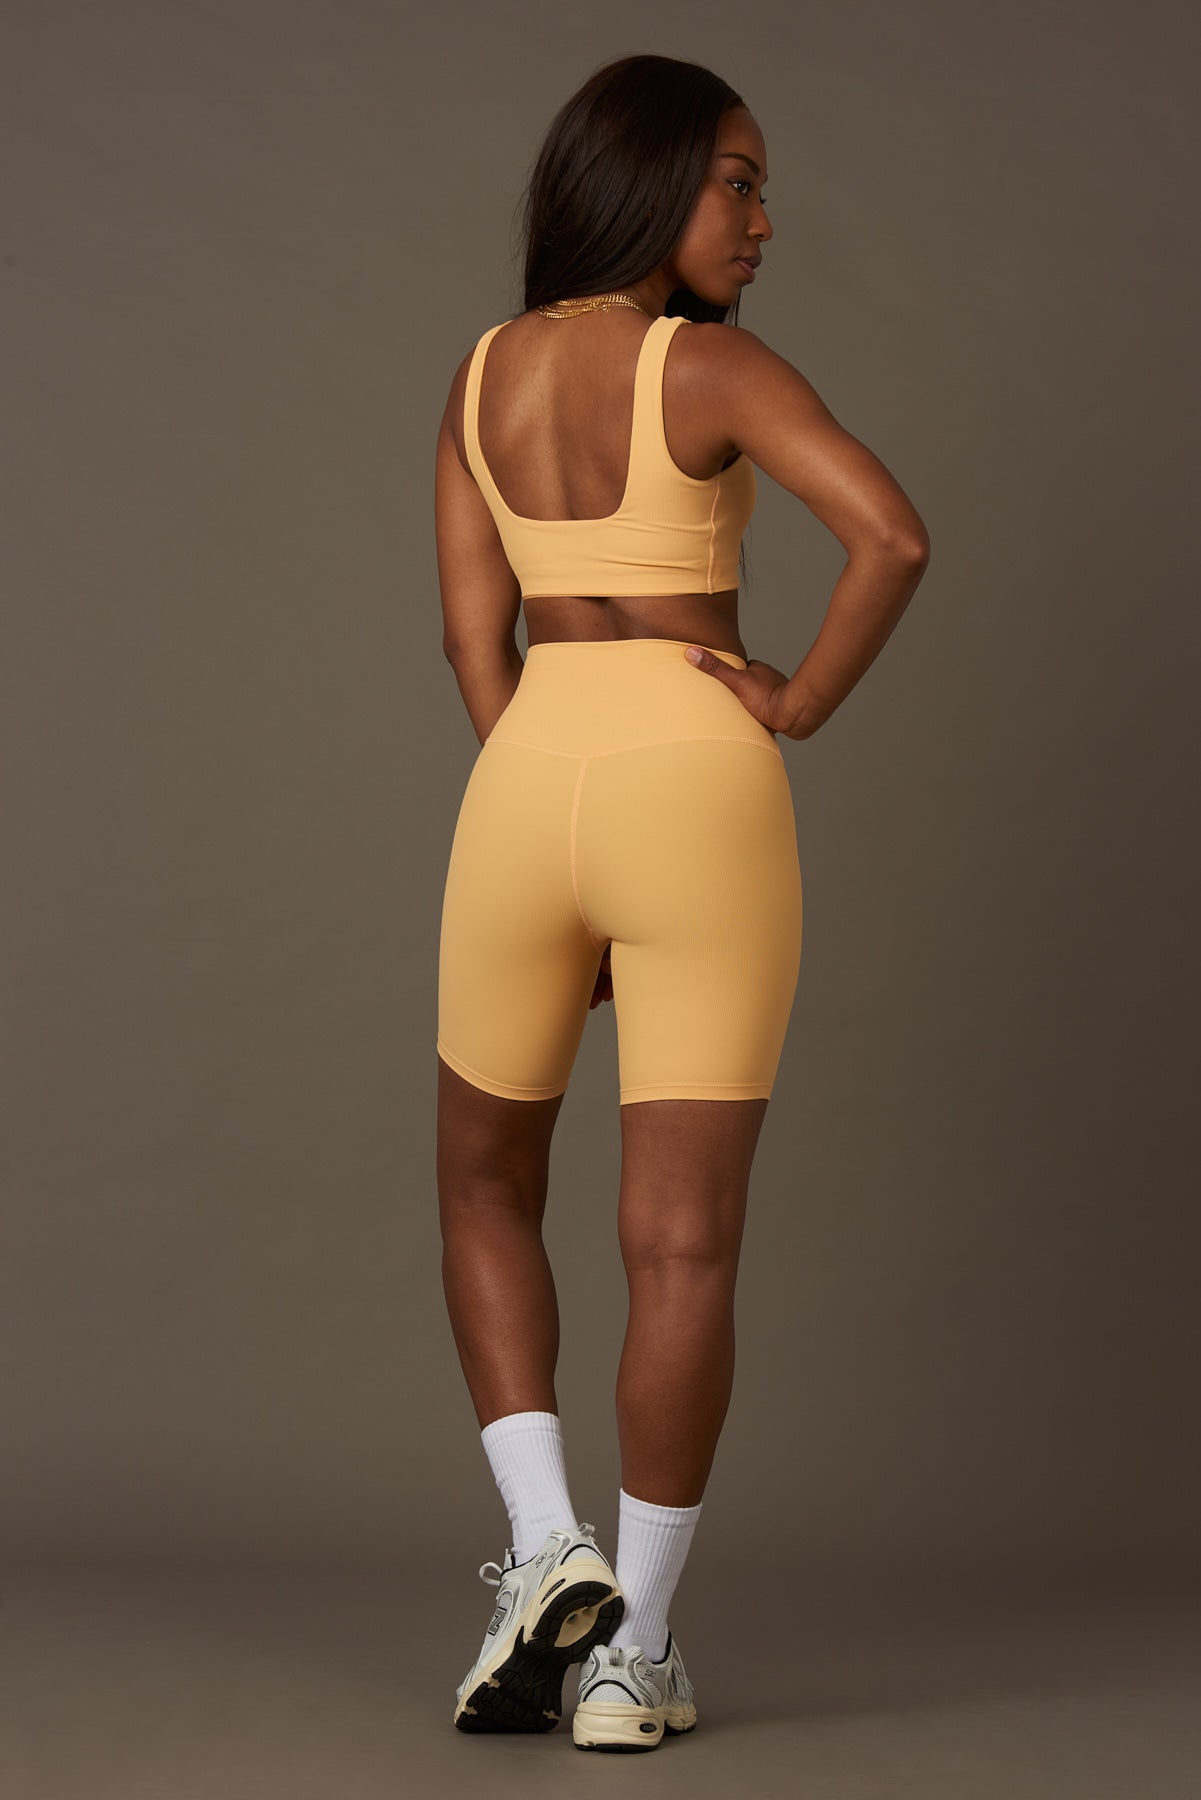 Bel Air Bra en Peach-Bras-Shop Clothing Sustainable Recycled Yoga Leggings Women On-line Barcelona Believe Athletics Sustainable Recycled Yoga Clothes